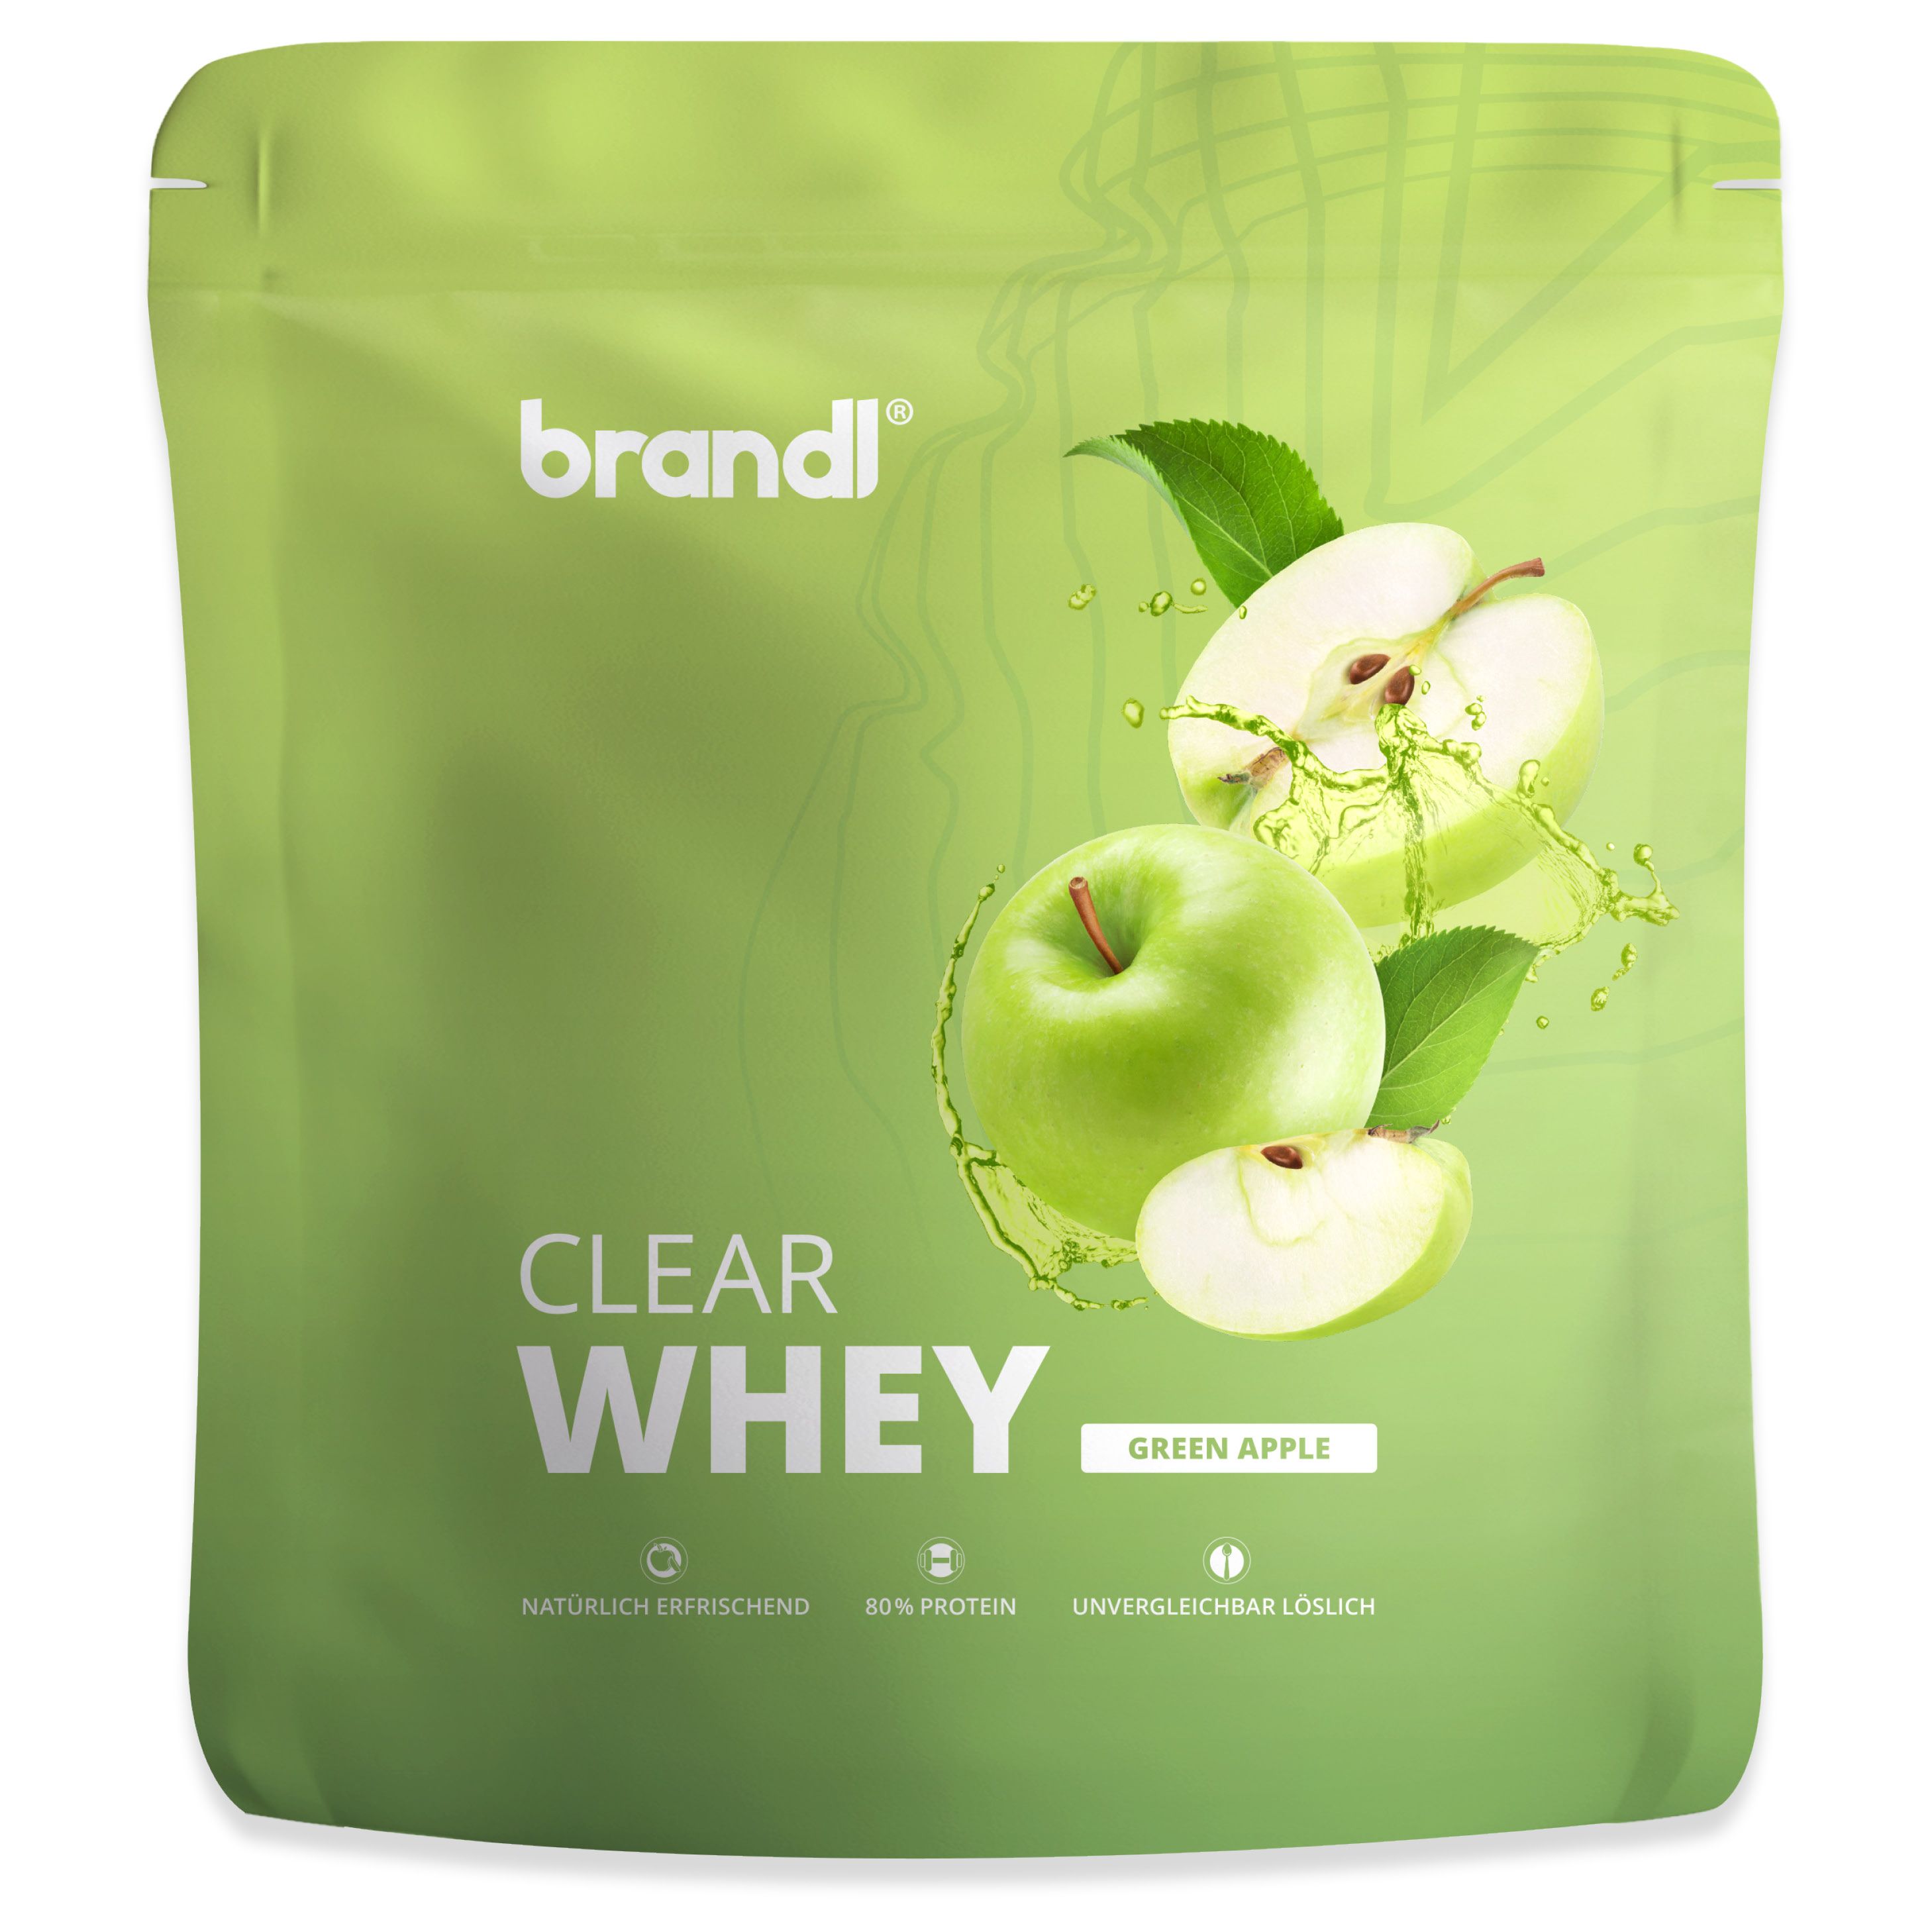 brandl® Clear Whey Isolate - Protein Drink mit natürlichem Geschmack - Green Apple